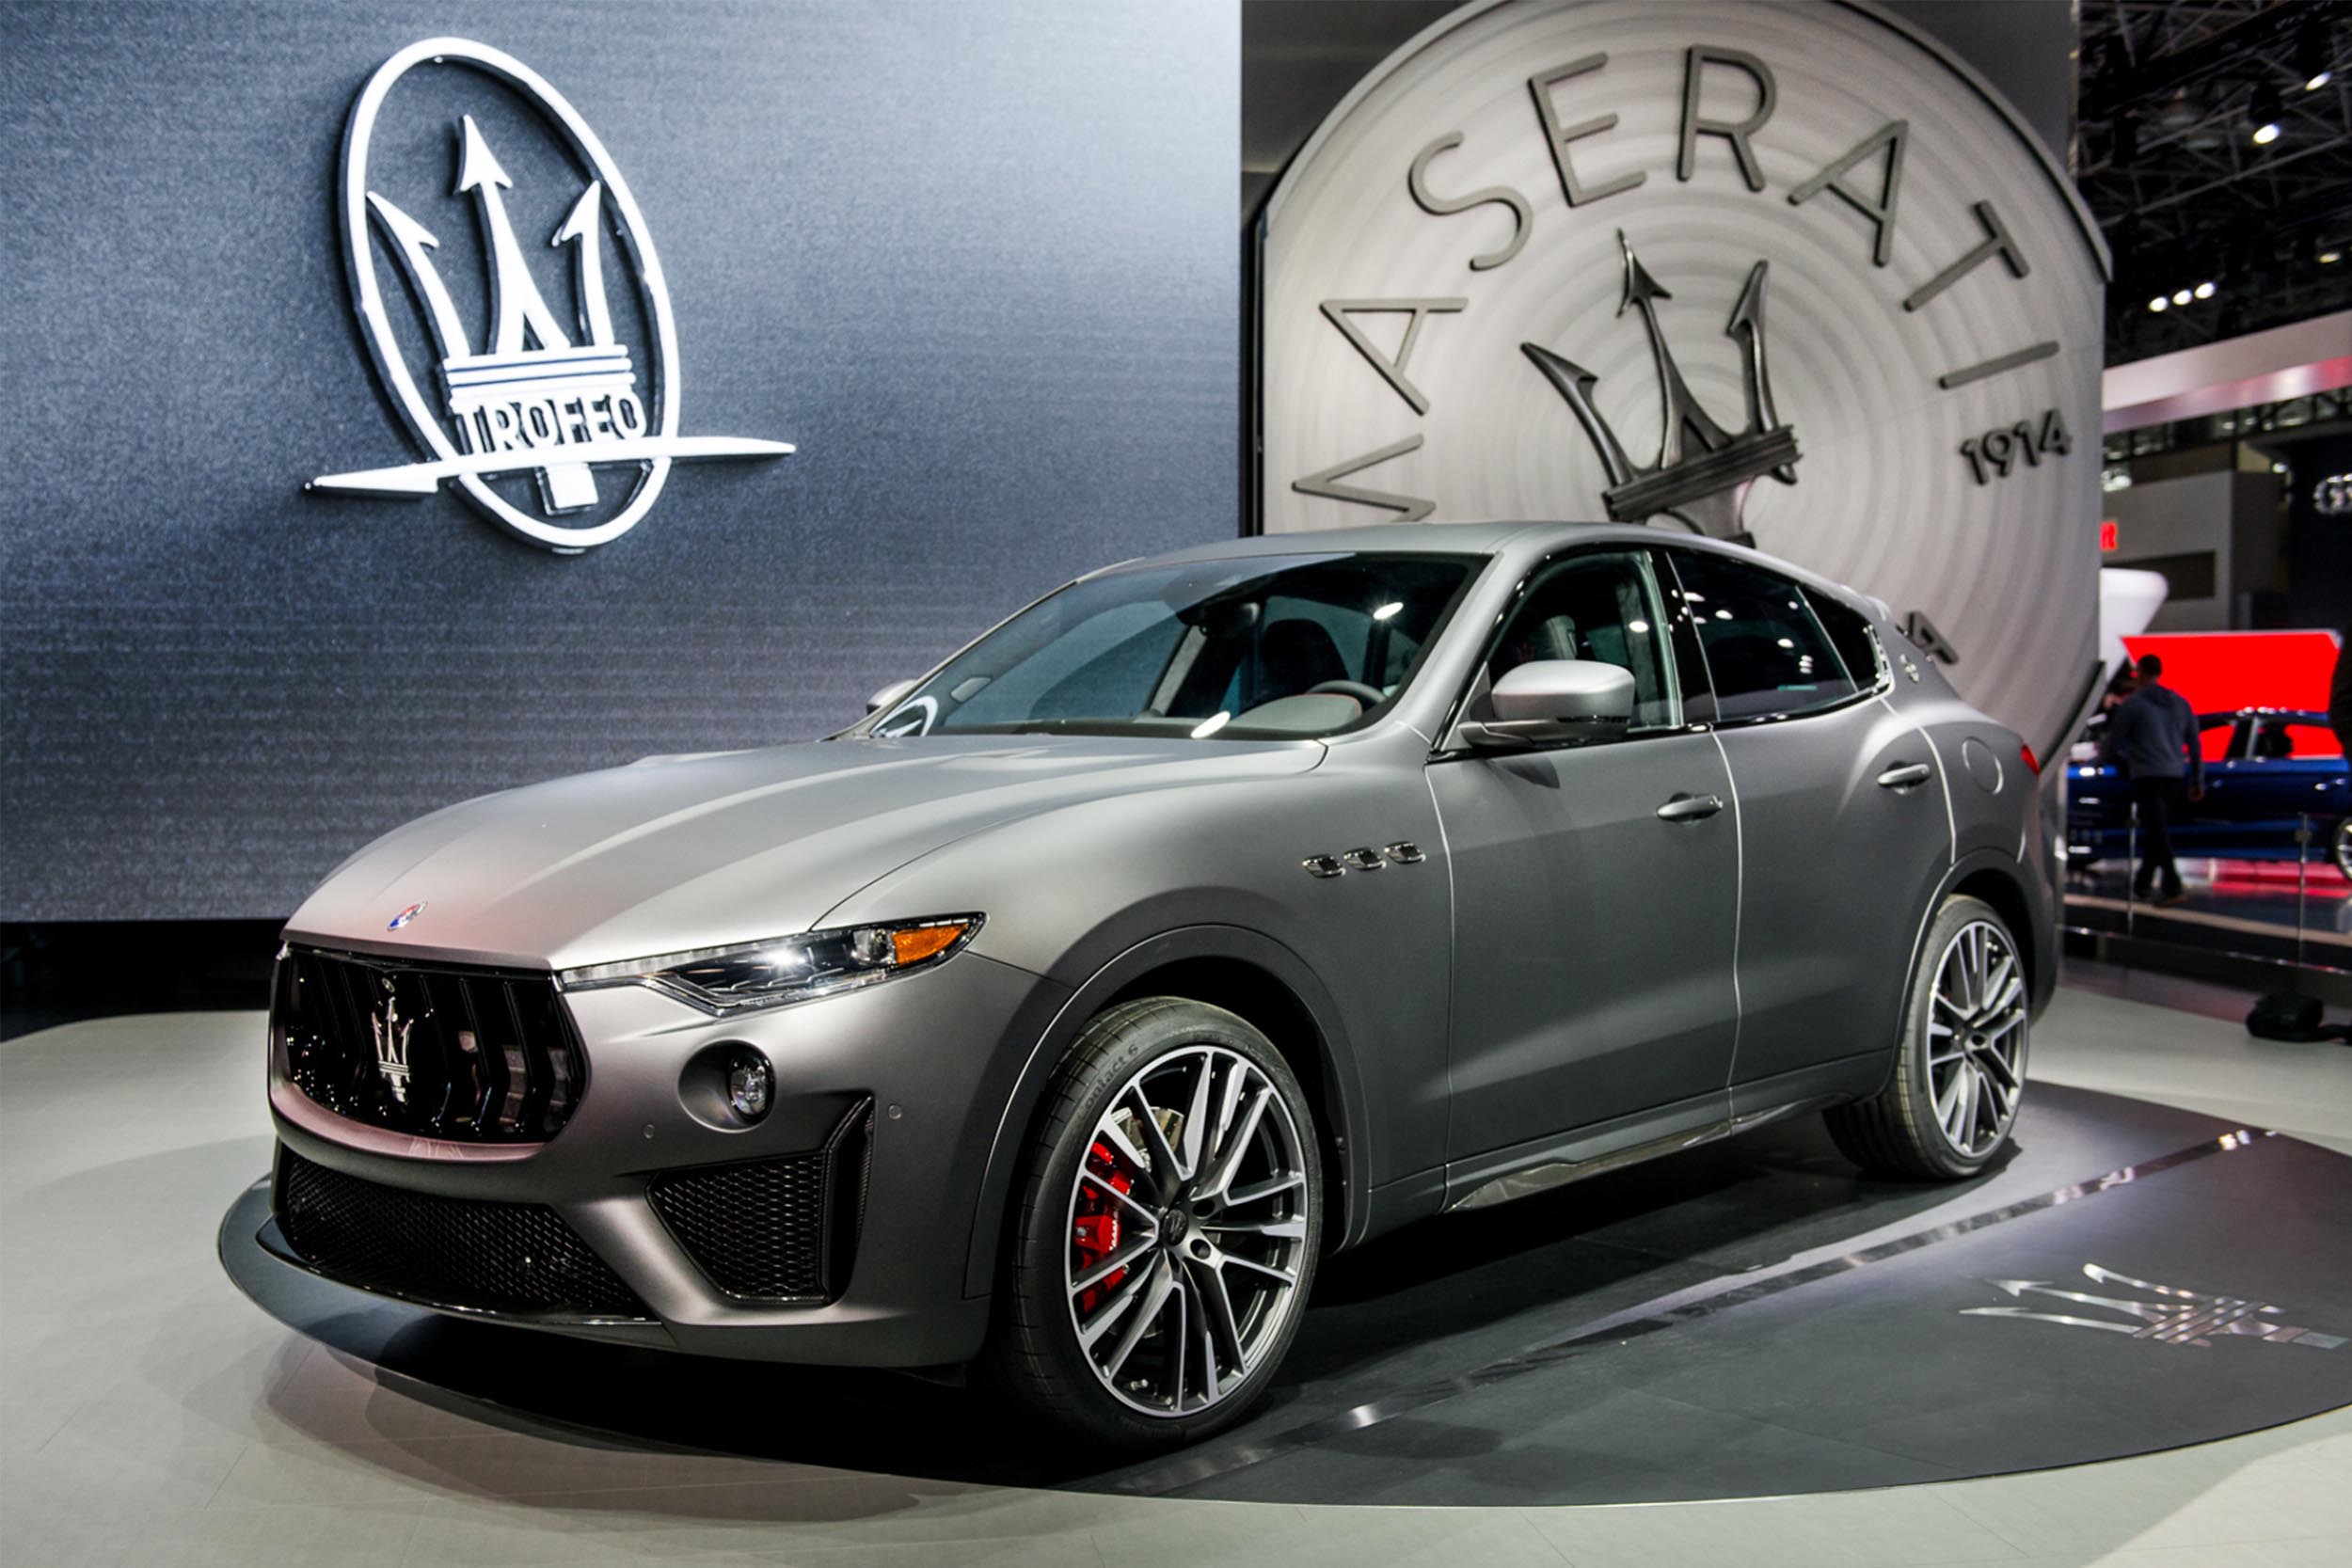 Maserati North America – New Jersey, USA / FEB 2019